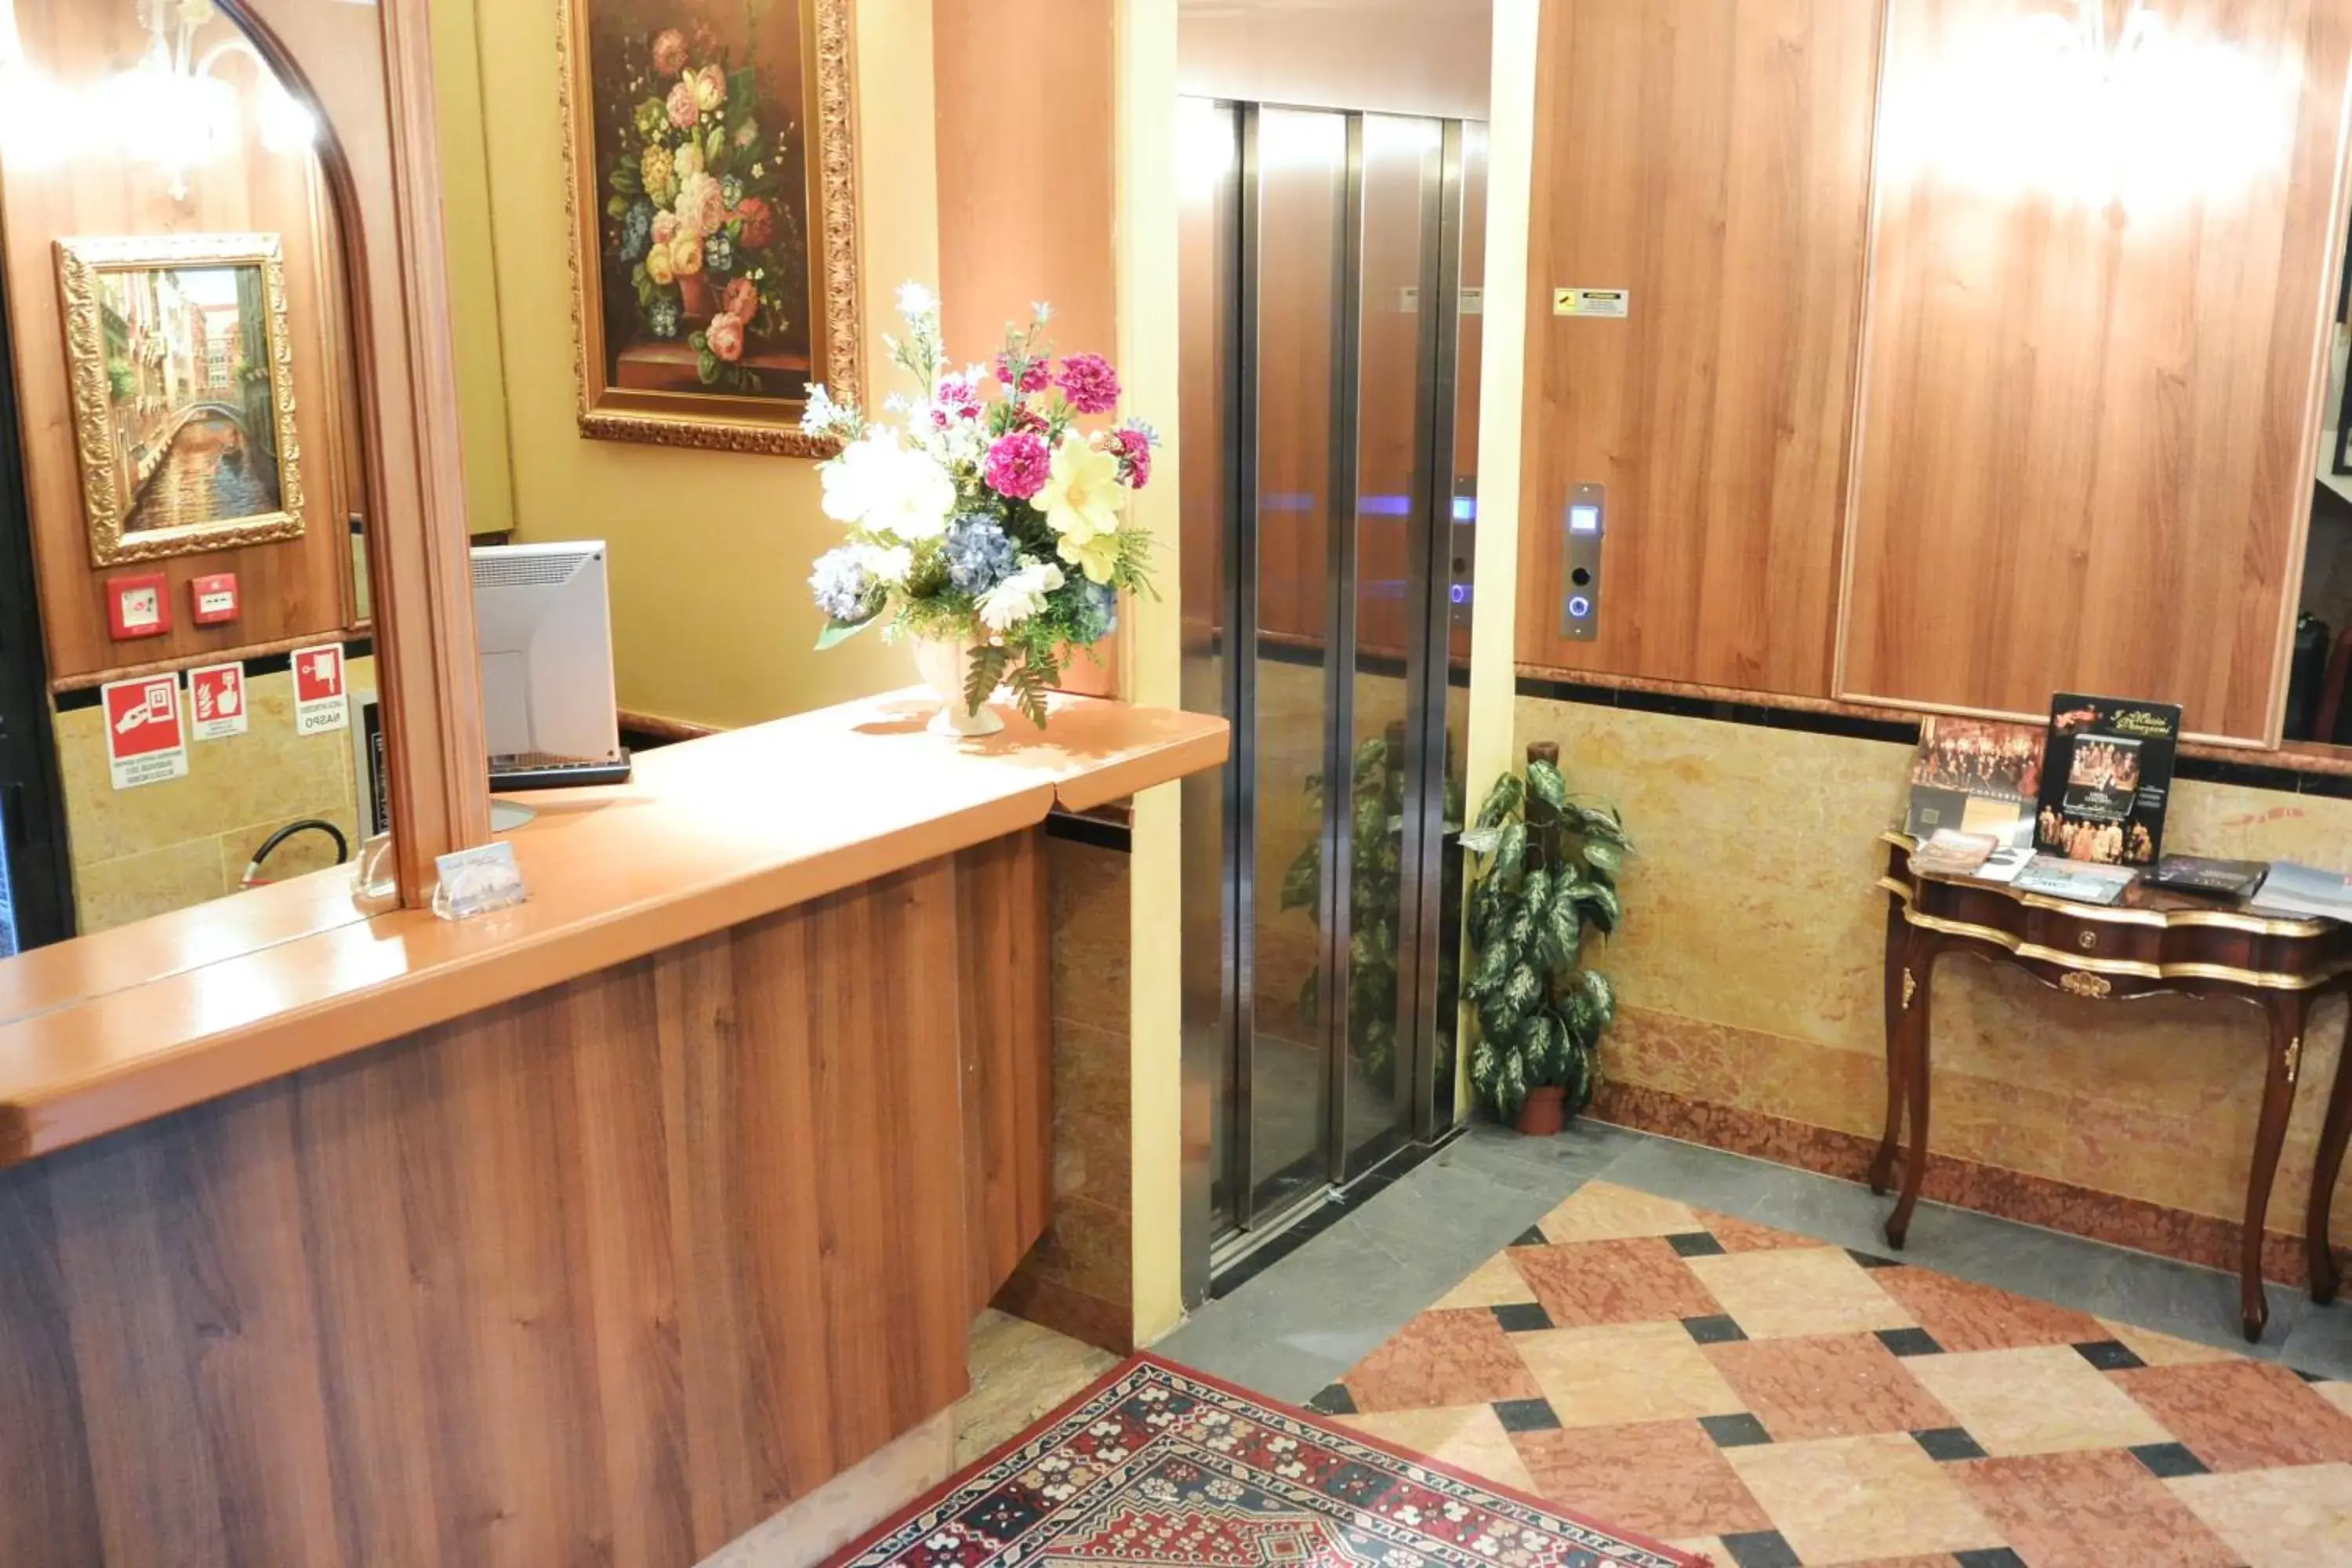 Lobby or reception, Lobby/Reception in Hotel Città Di Milano